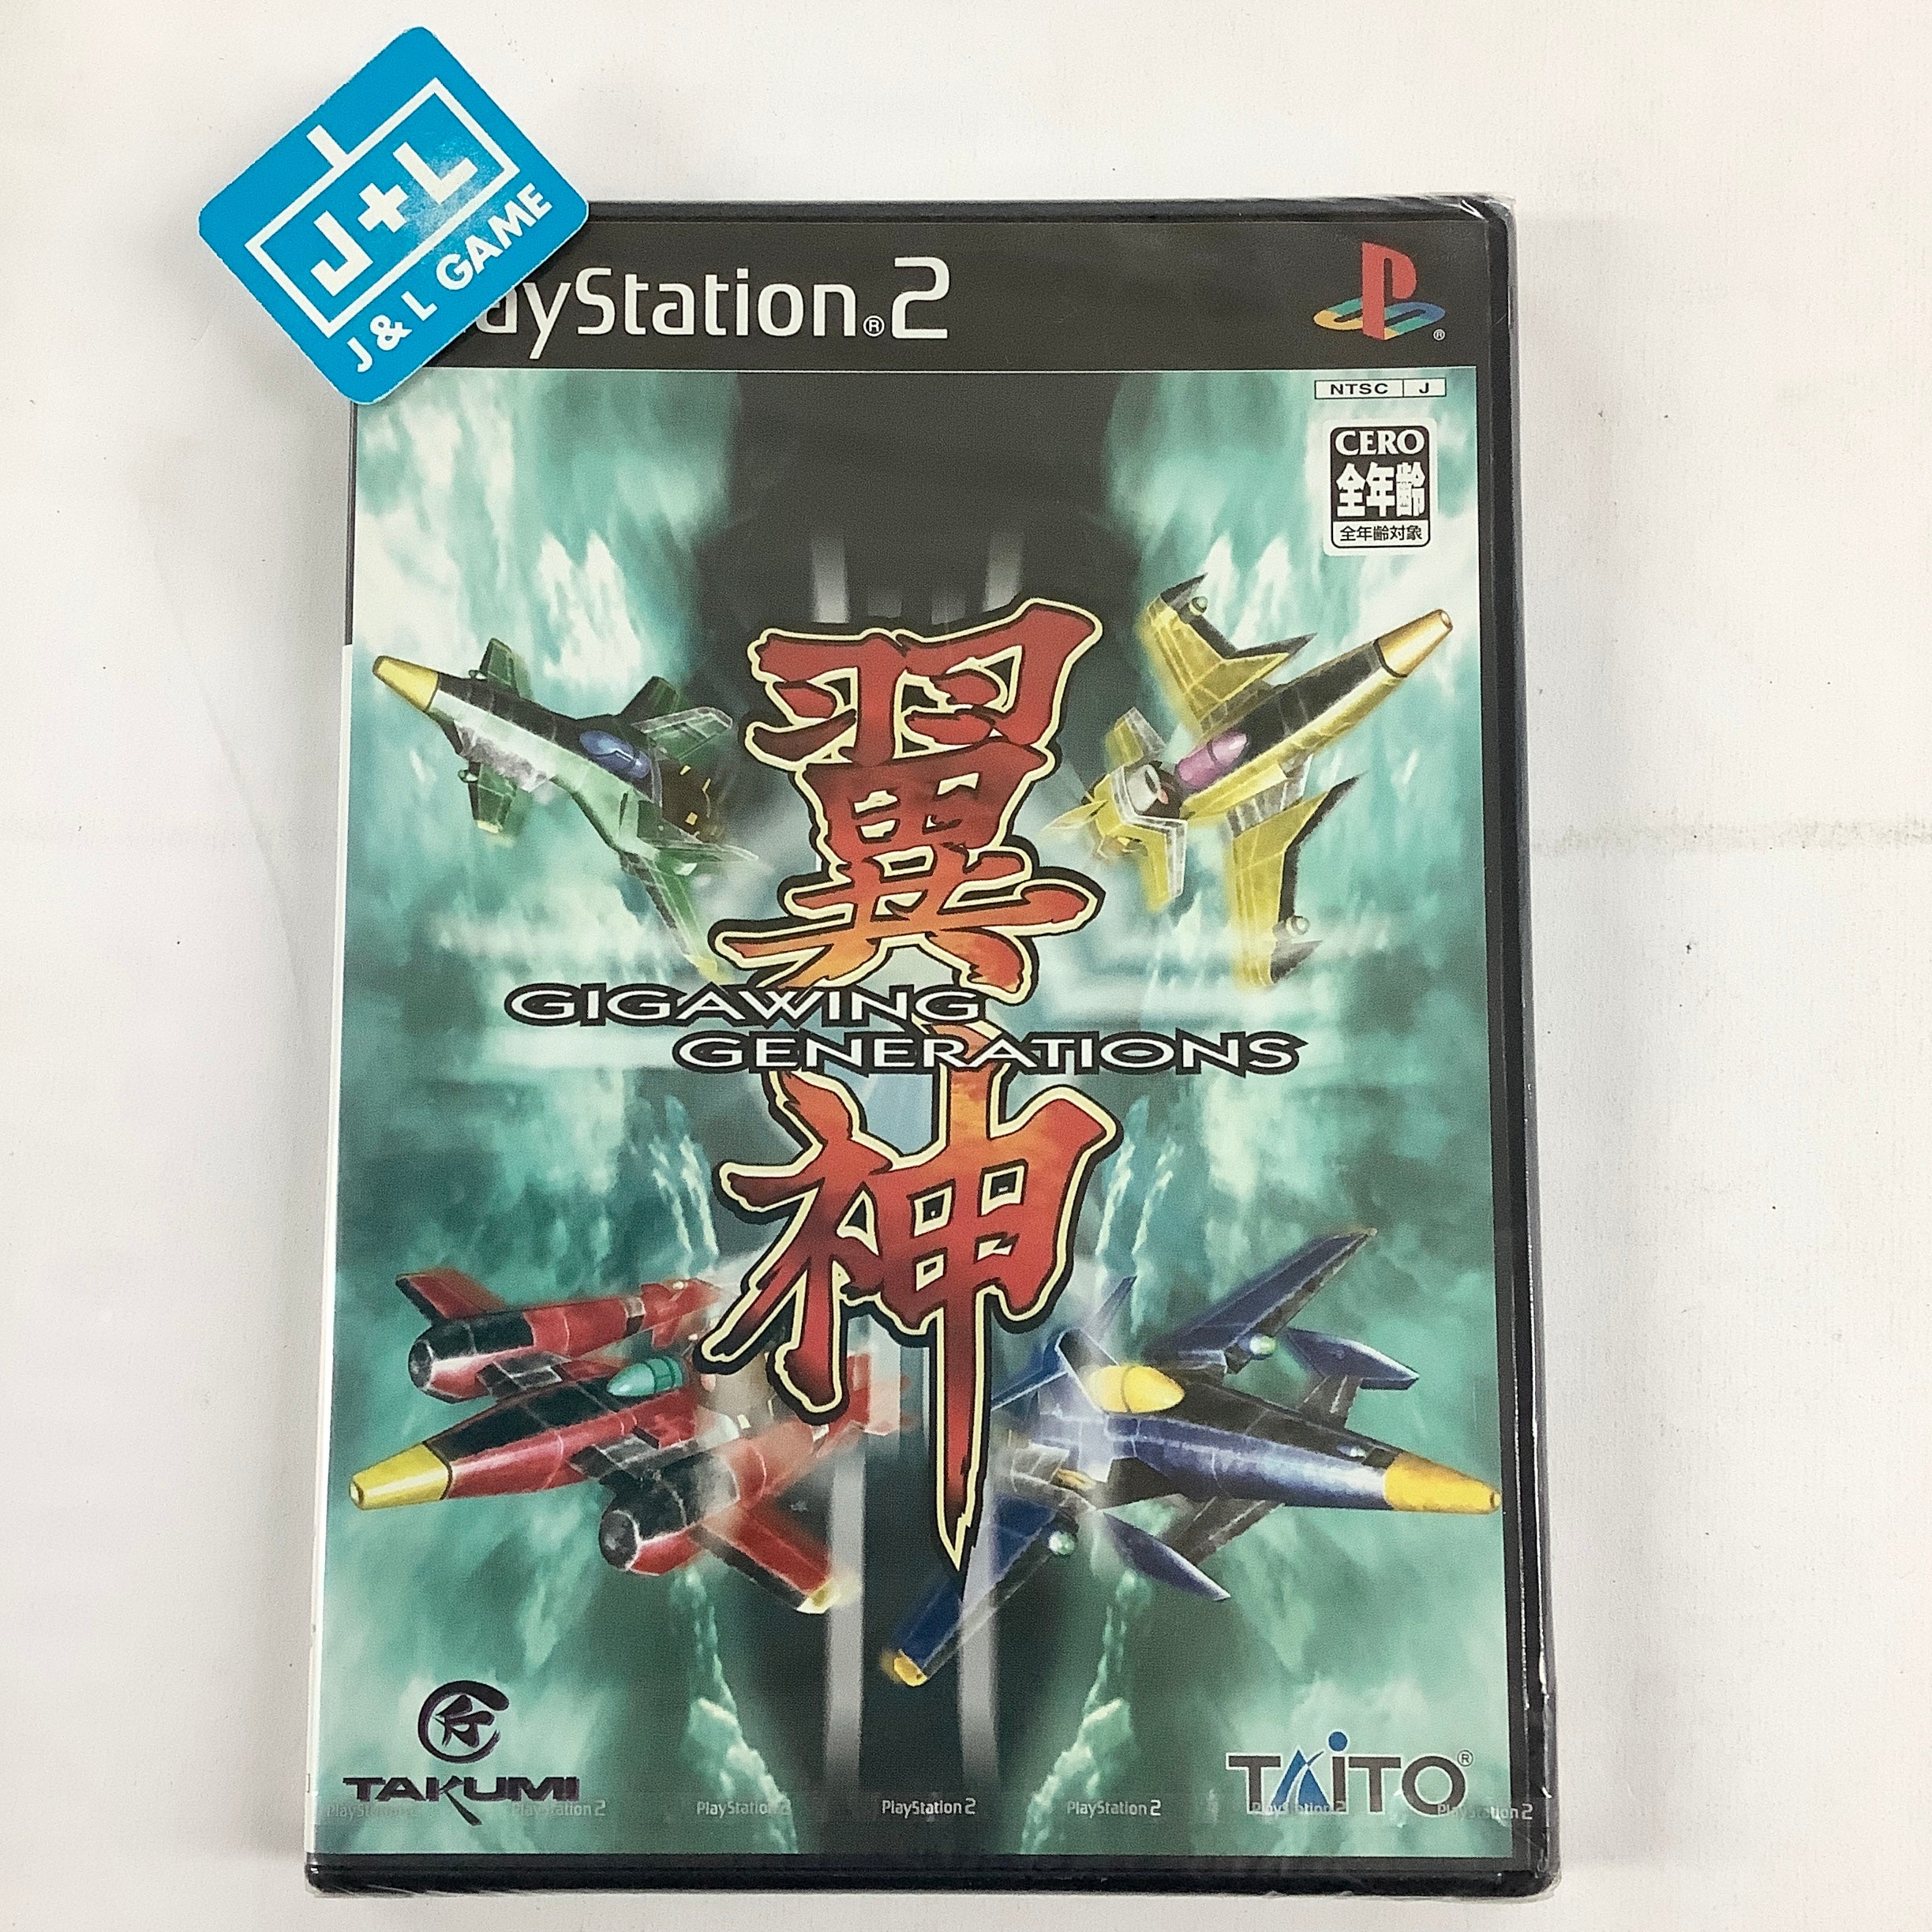 Yokushin: Giga Wing Generations - (PS2) PlayStation 2 (Japanese Import) Video Games Taito Corporation   